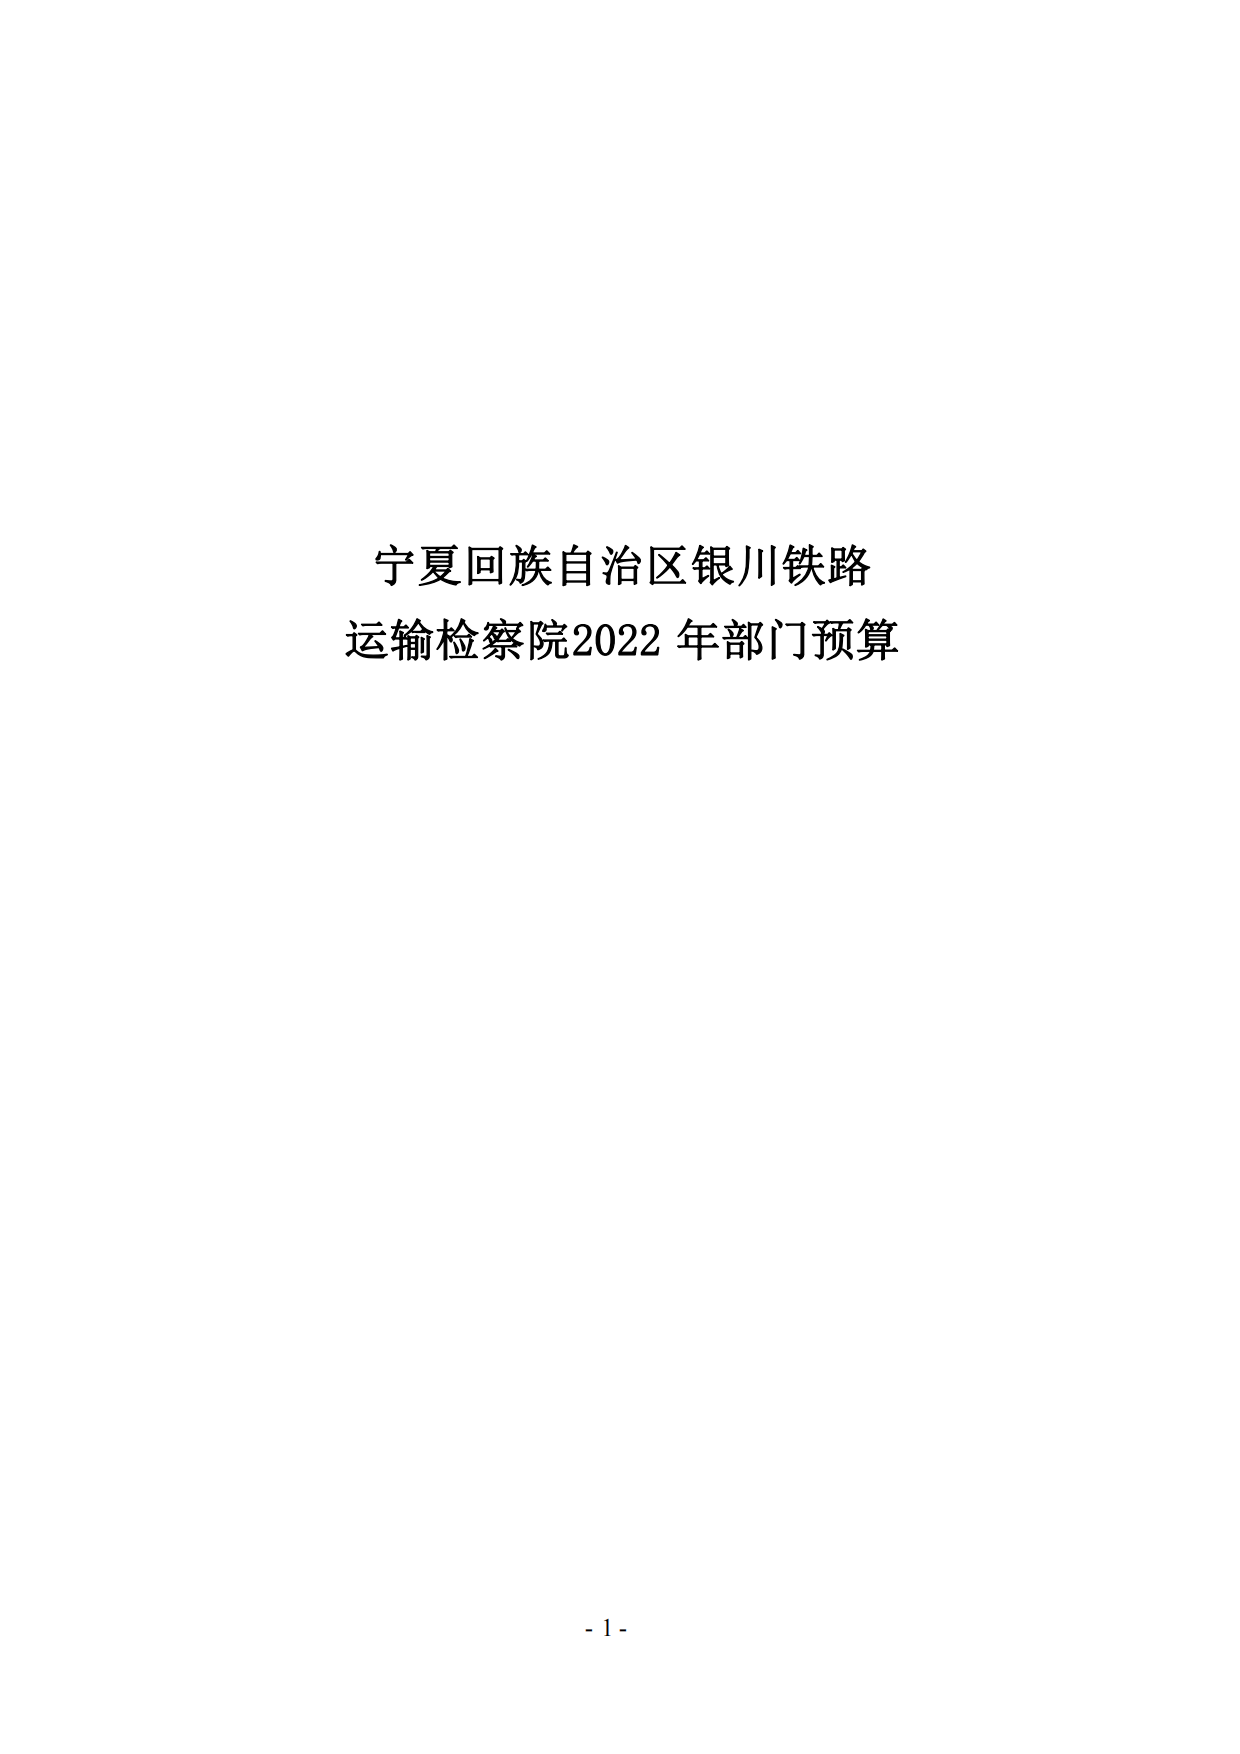 银川铁路运输检察院2022年度预算公开(1)_00.png